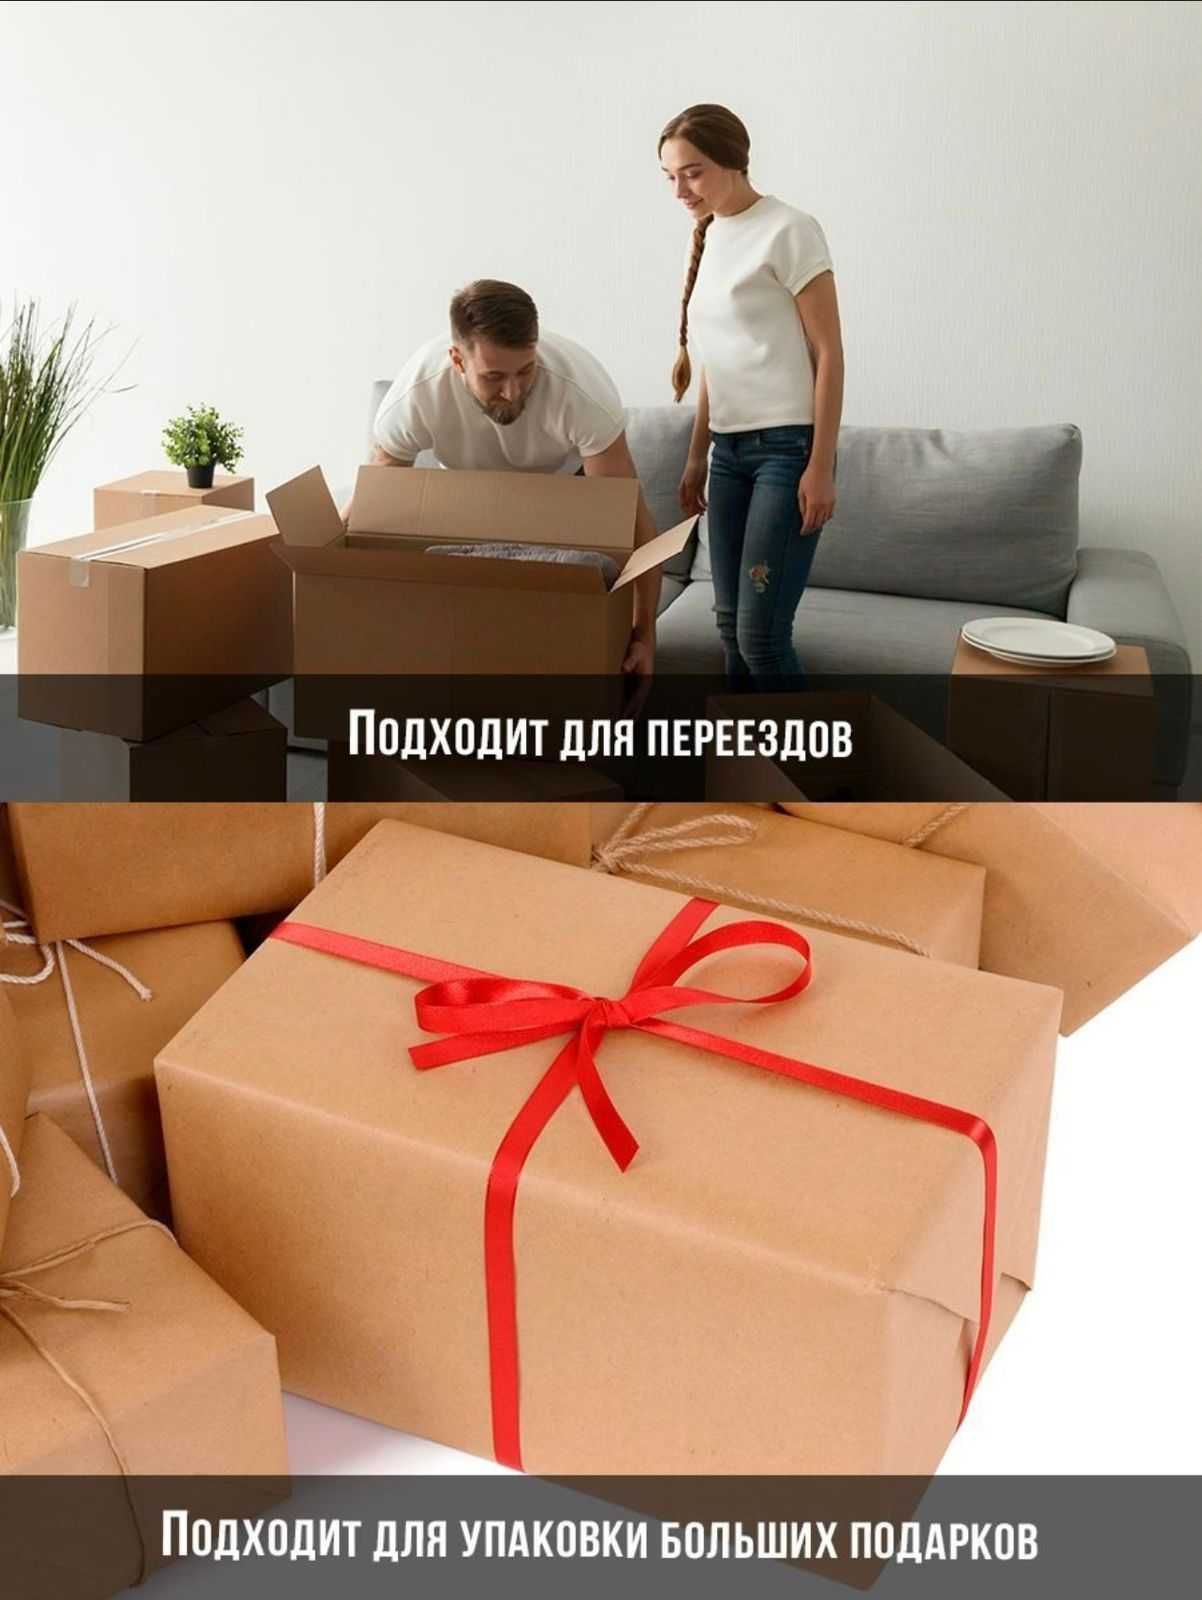 коробки картонные/гофрированные /упаковочные материалы для переезда